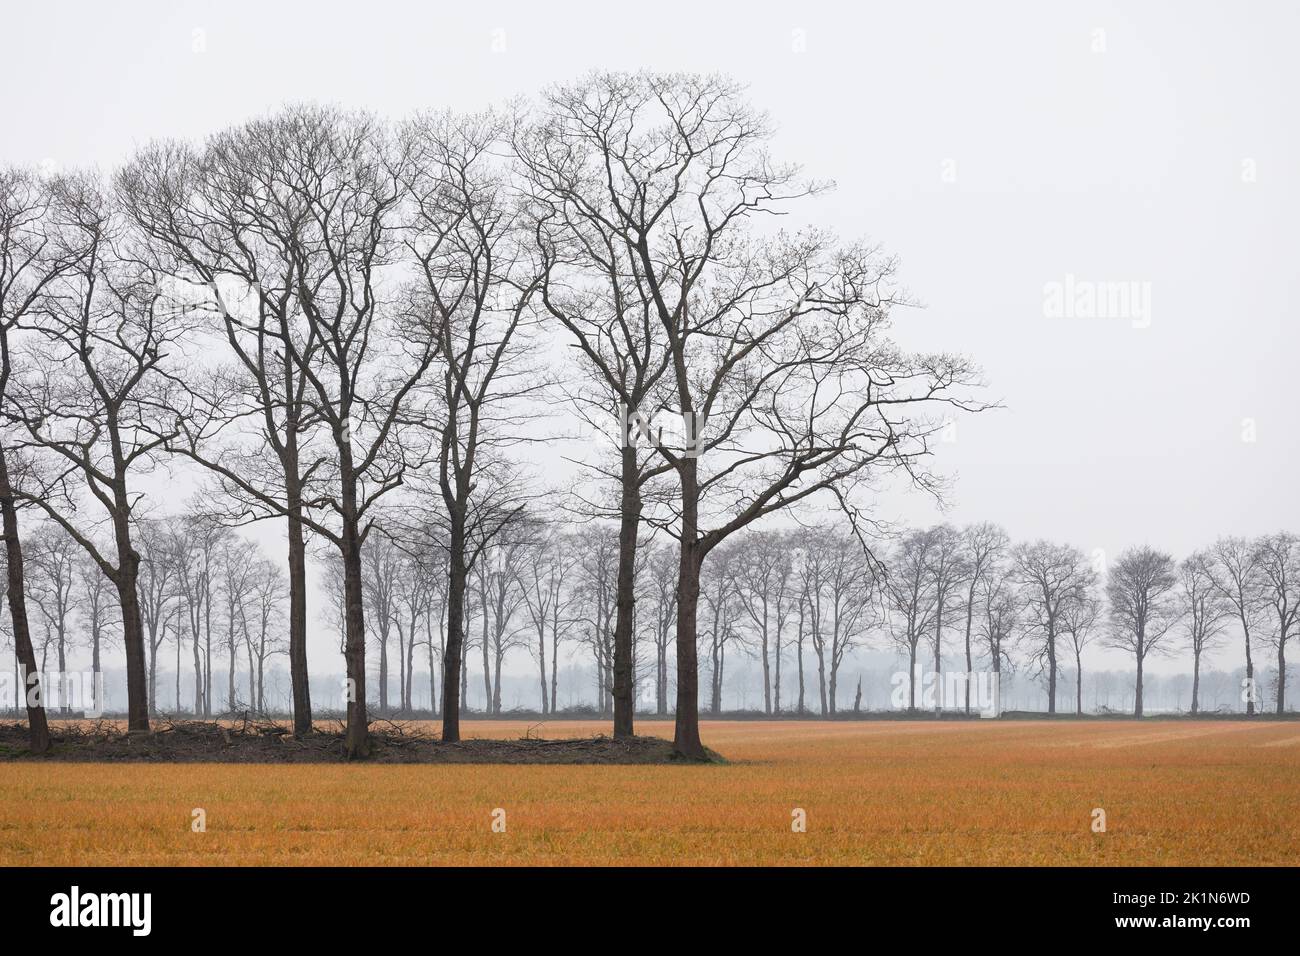 File di alberi nudi in primavera in un campo agricolo nei Paesi Bassi, l'erba è gialla dopo l'uso di Roundup Foto Stock